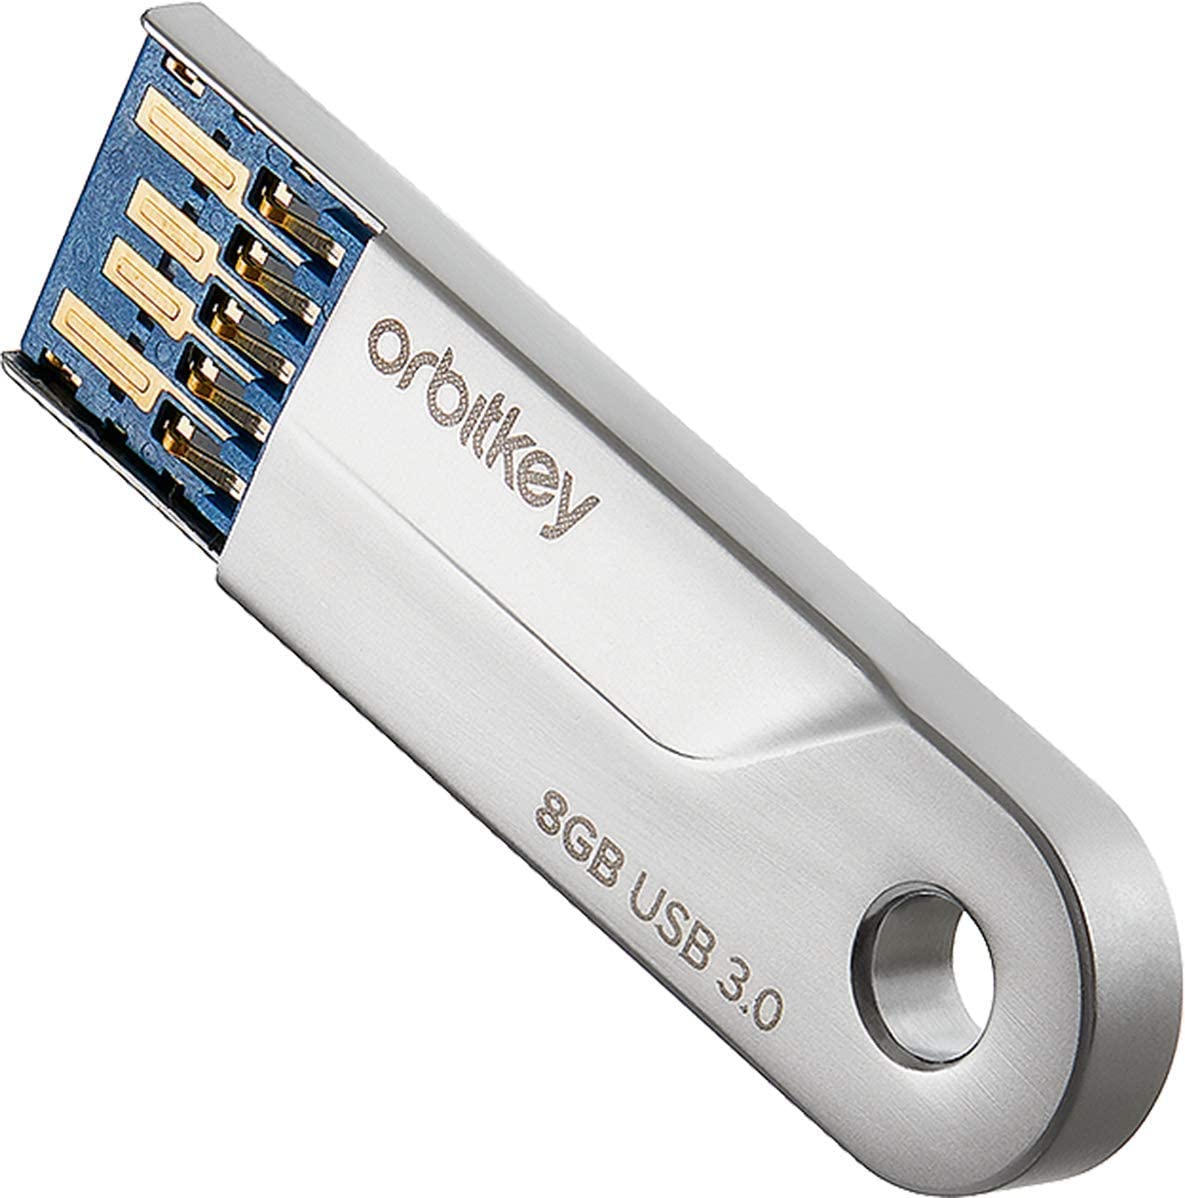 Orbitkey 2.0 USB-3 8GB